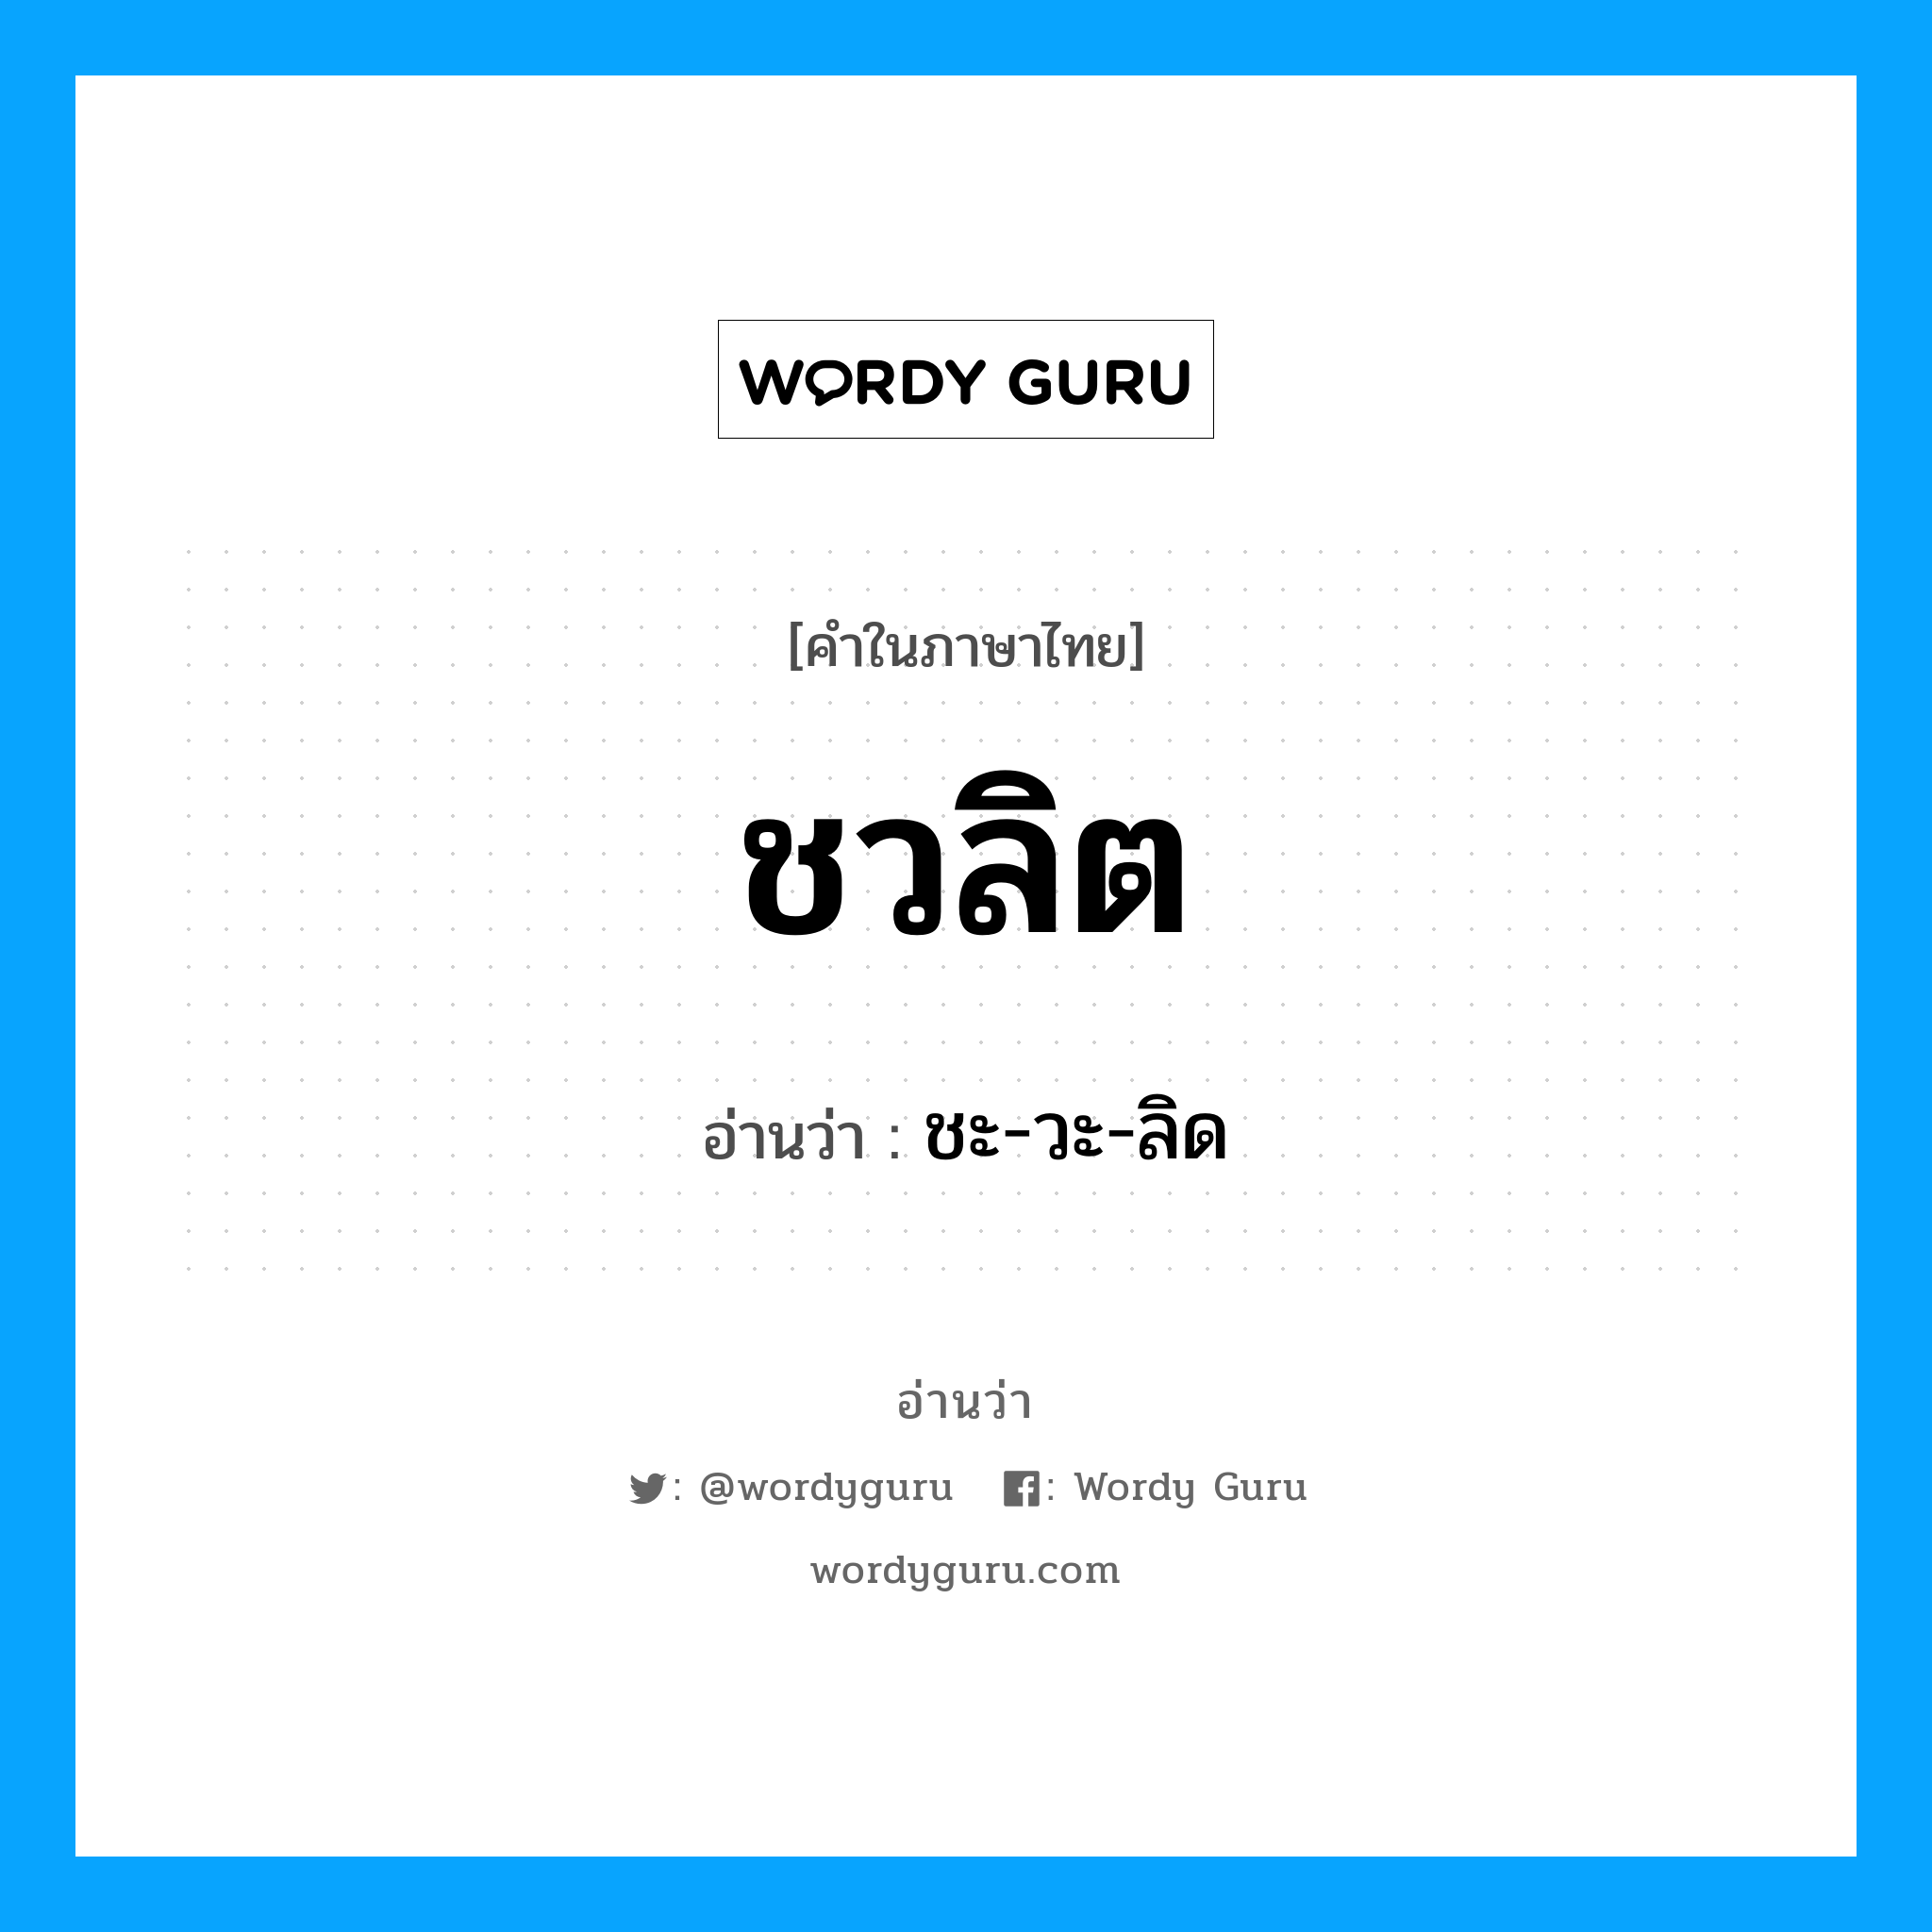 ชะ-วะ-ลิด เป็นคำอ่านของคำไหน?, คำในภาษาไทย ชะ-วะ-ลิด อ่านว่า ชวลิต